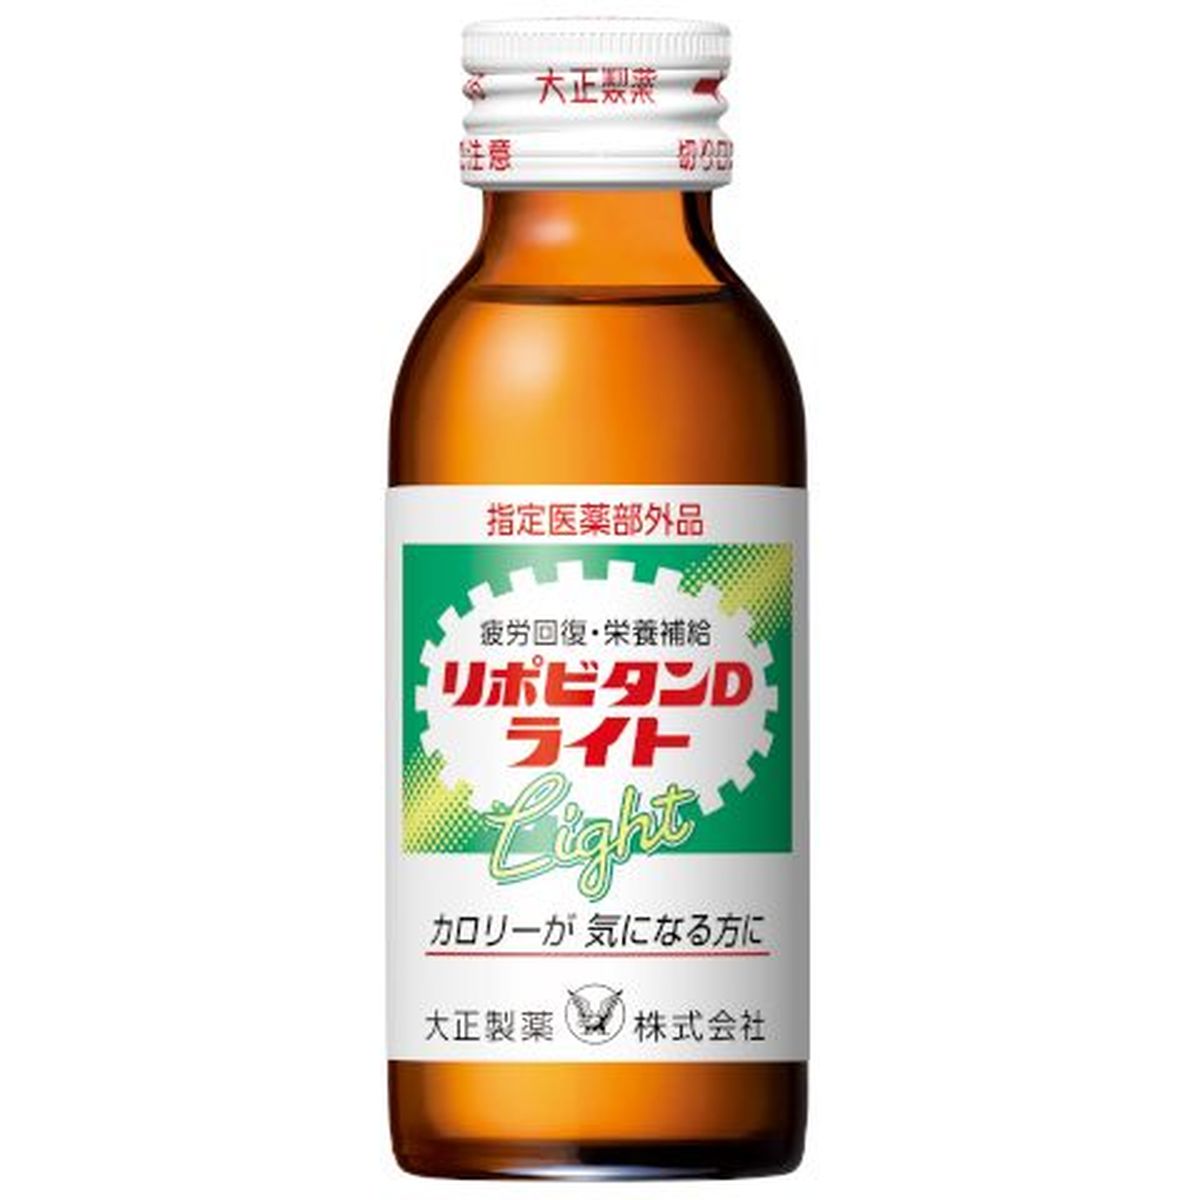 【50個入リ】大正製薬 リポビタンD ライト 瓶 100ml